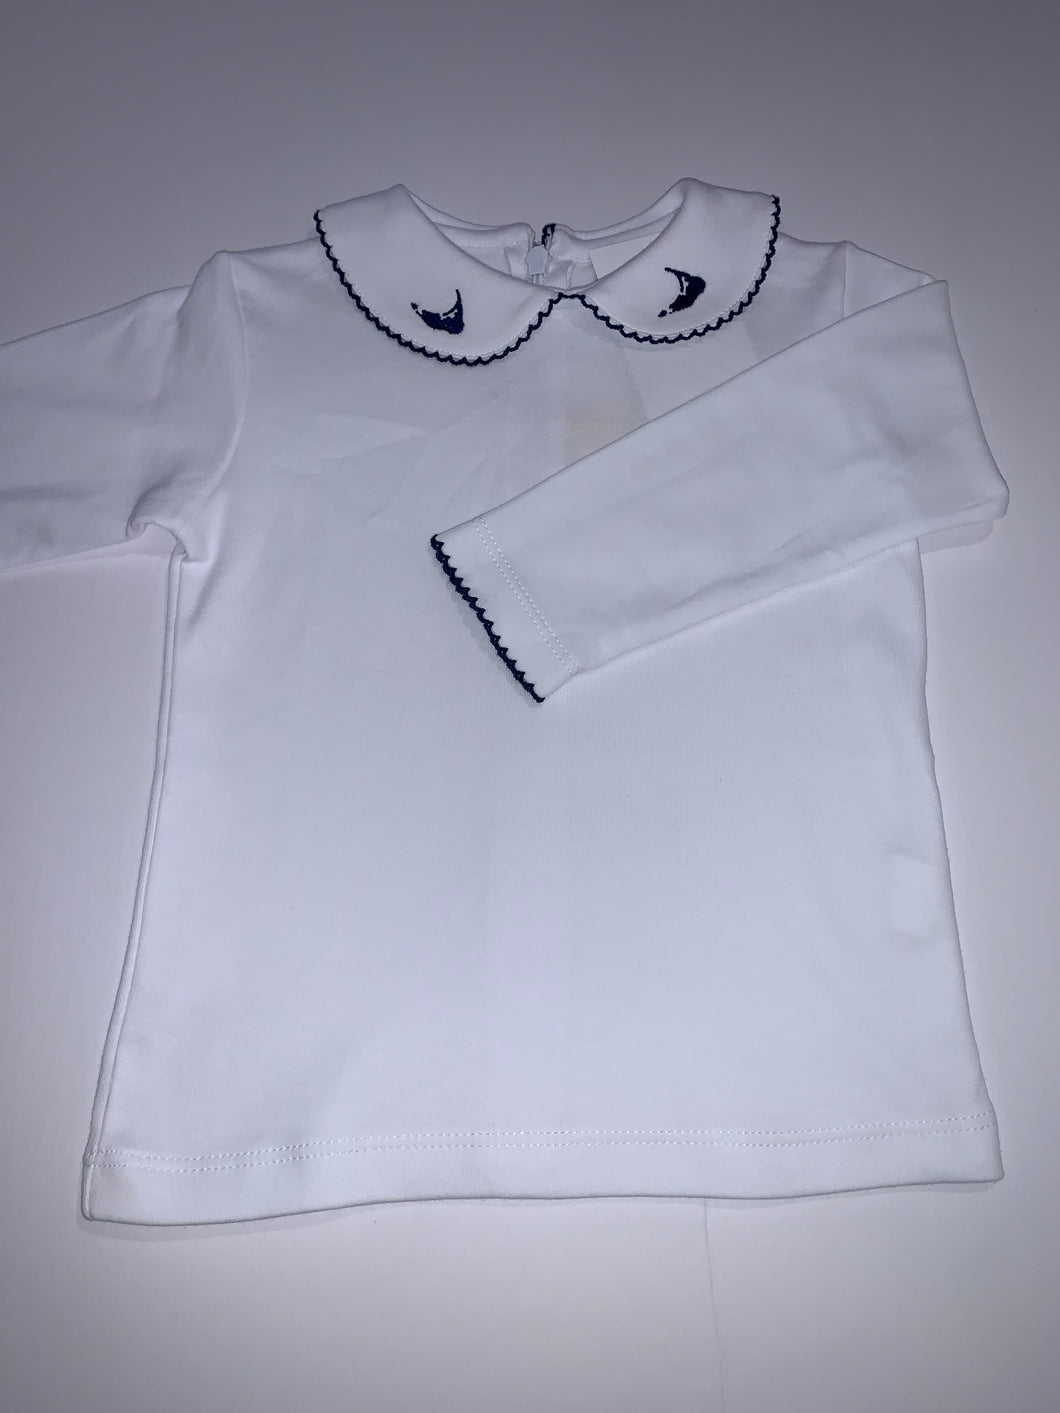 White cotton top white navy island on collar